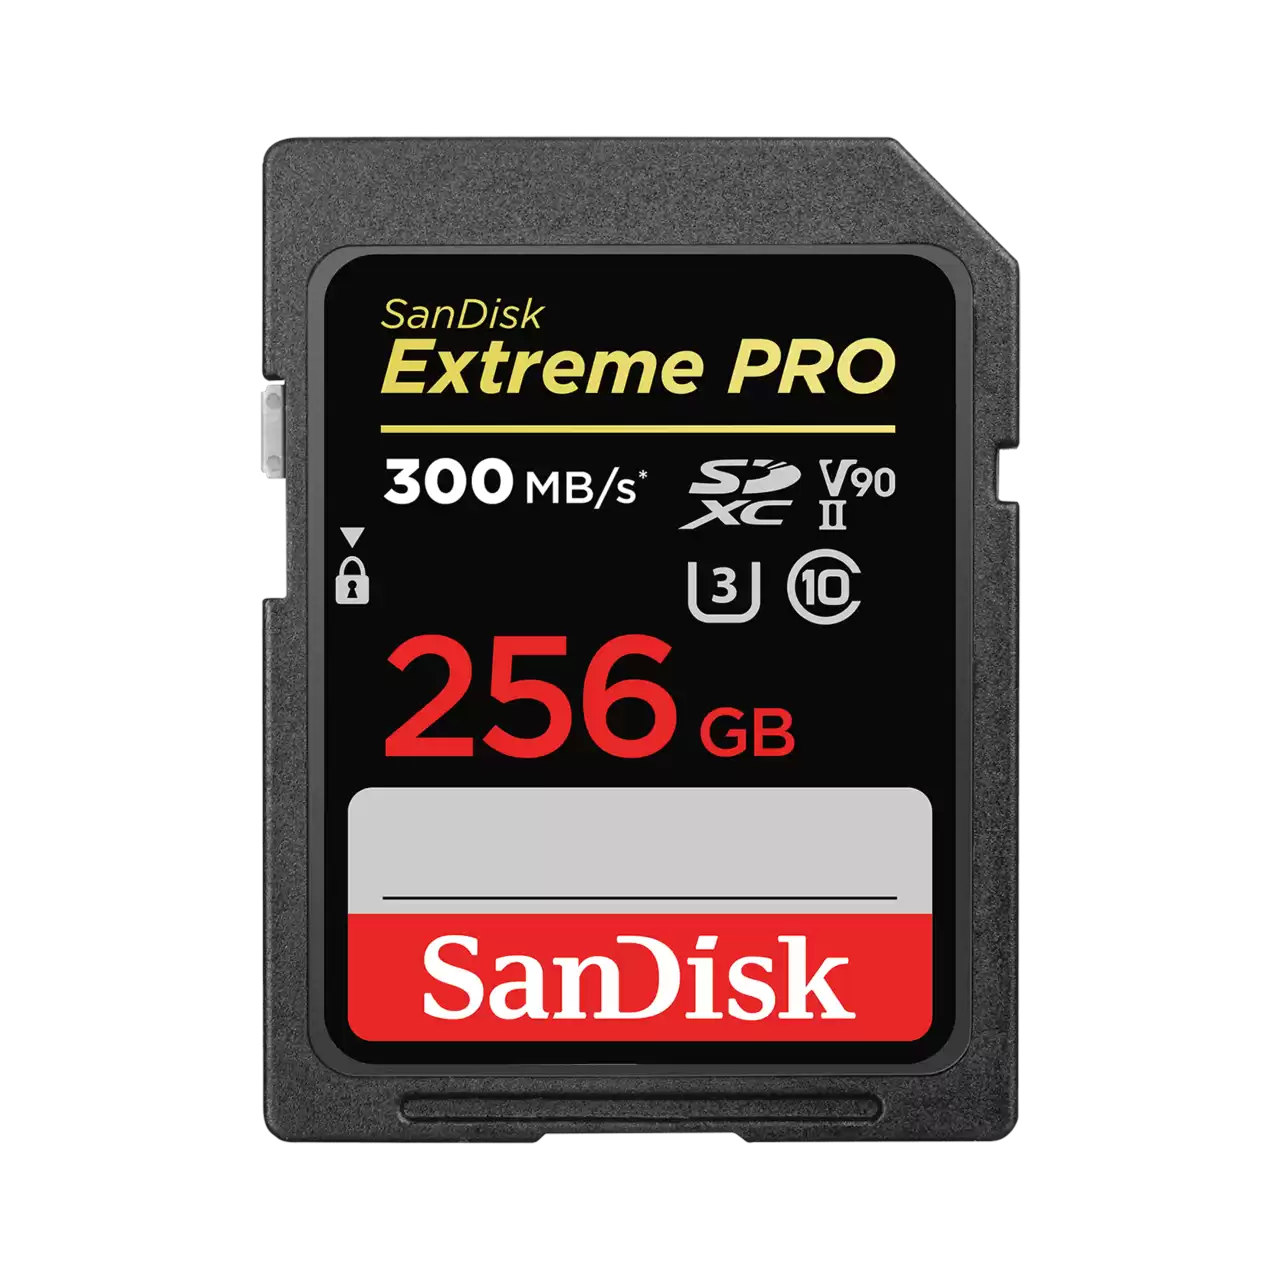 Sandisk ExtremePro (8K) 256Gb 300MB/R 260MB/W UHS-II U3 V90 SDXC CARD #sDsDXDK-256-gN4iN